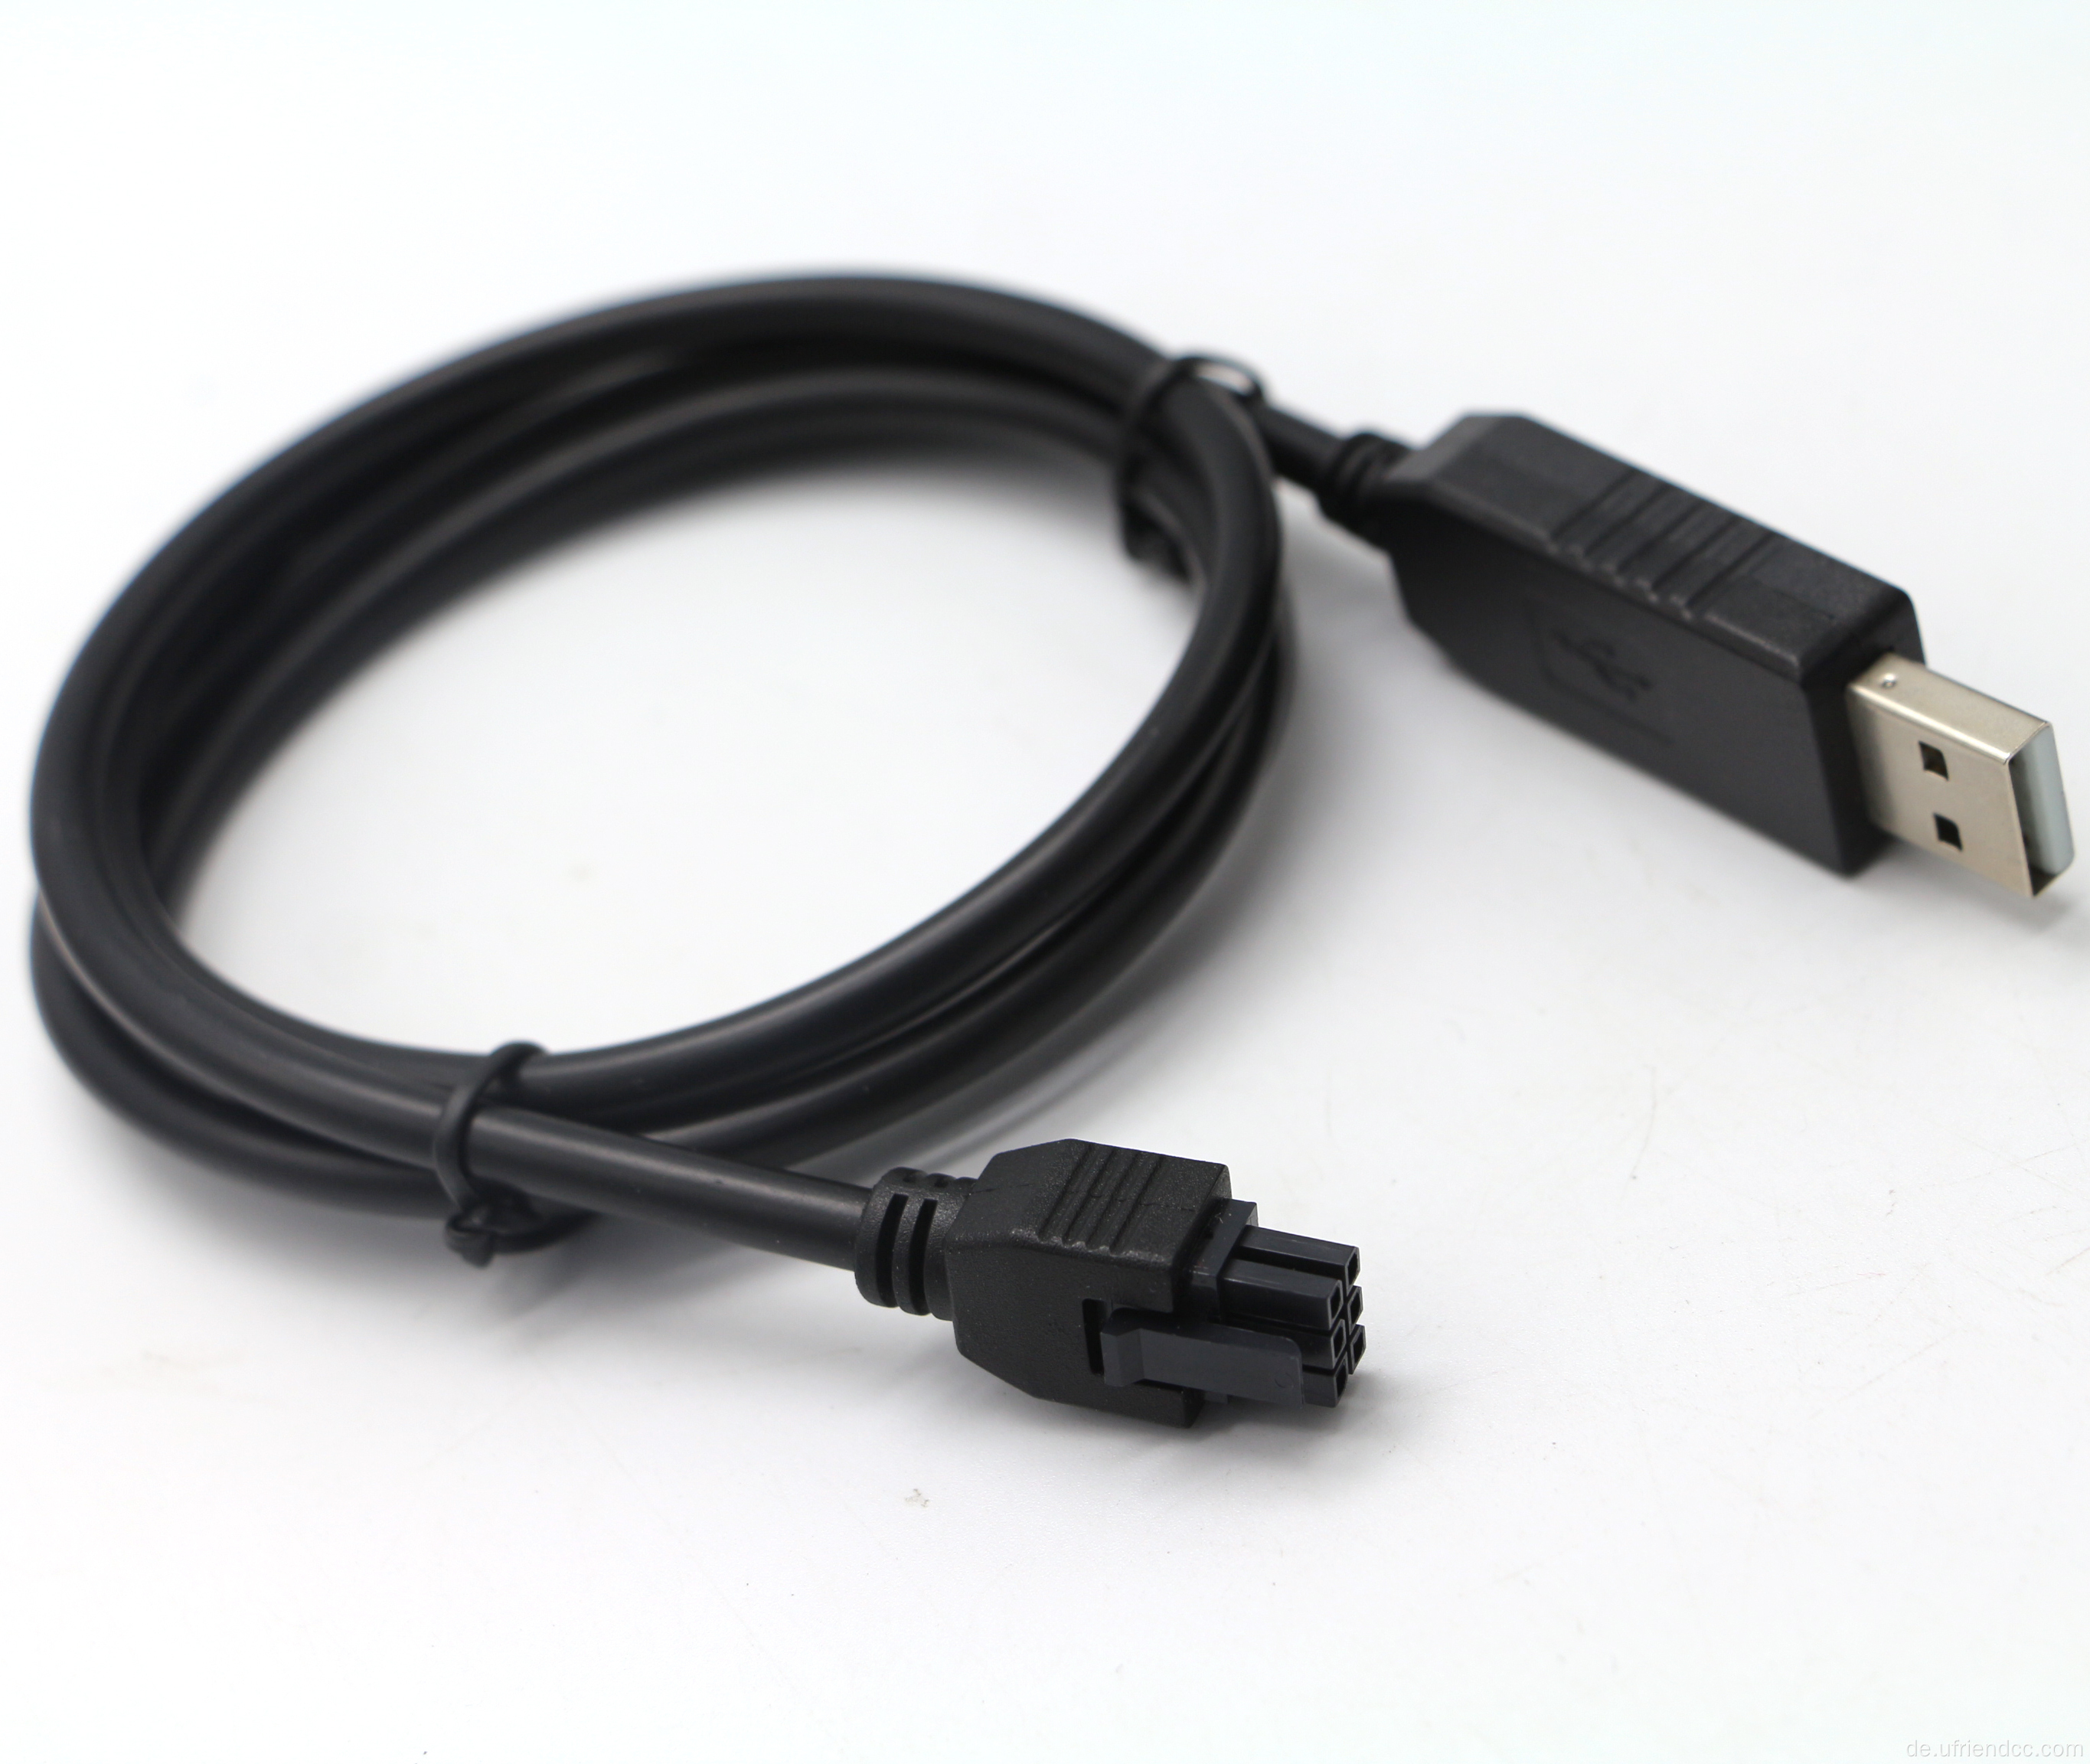 FTDI-RS232 USB-zu Molex Diagnostic Cable Tesla Vehikel